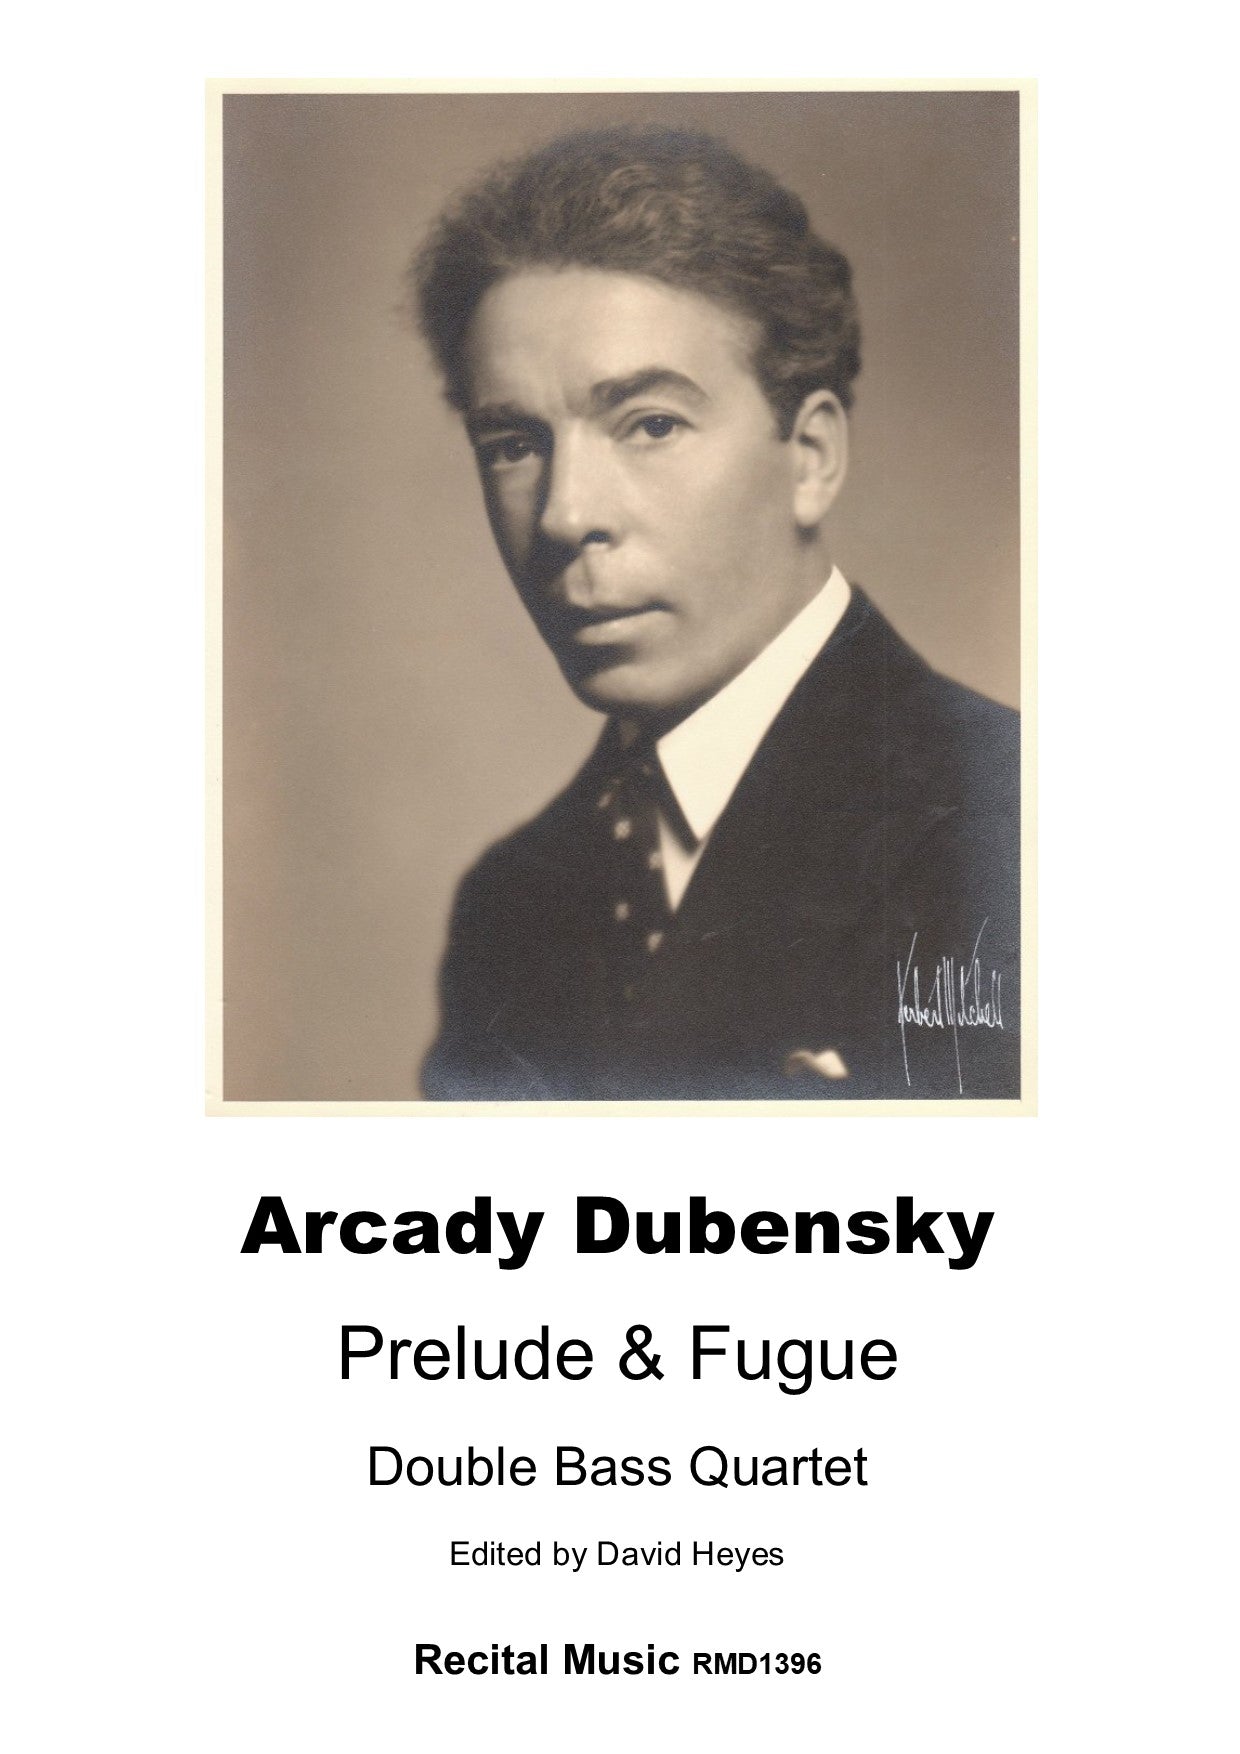 Arcady Dubensky: Prelude & Fugue for double bass quartet